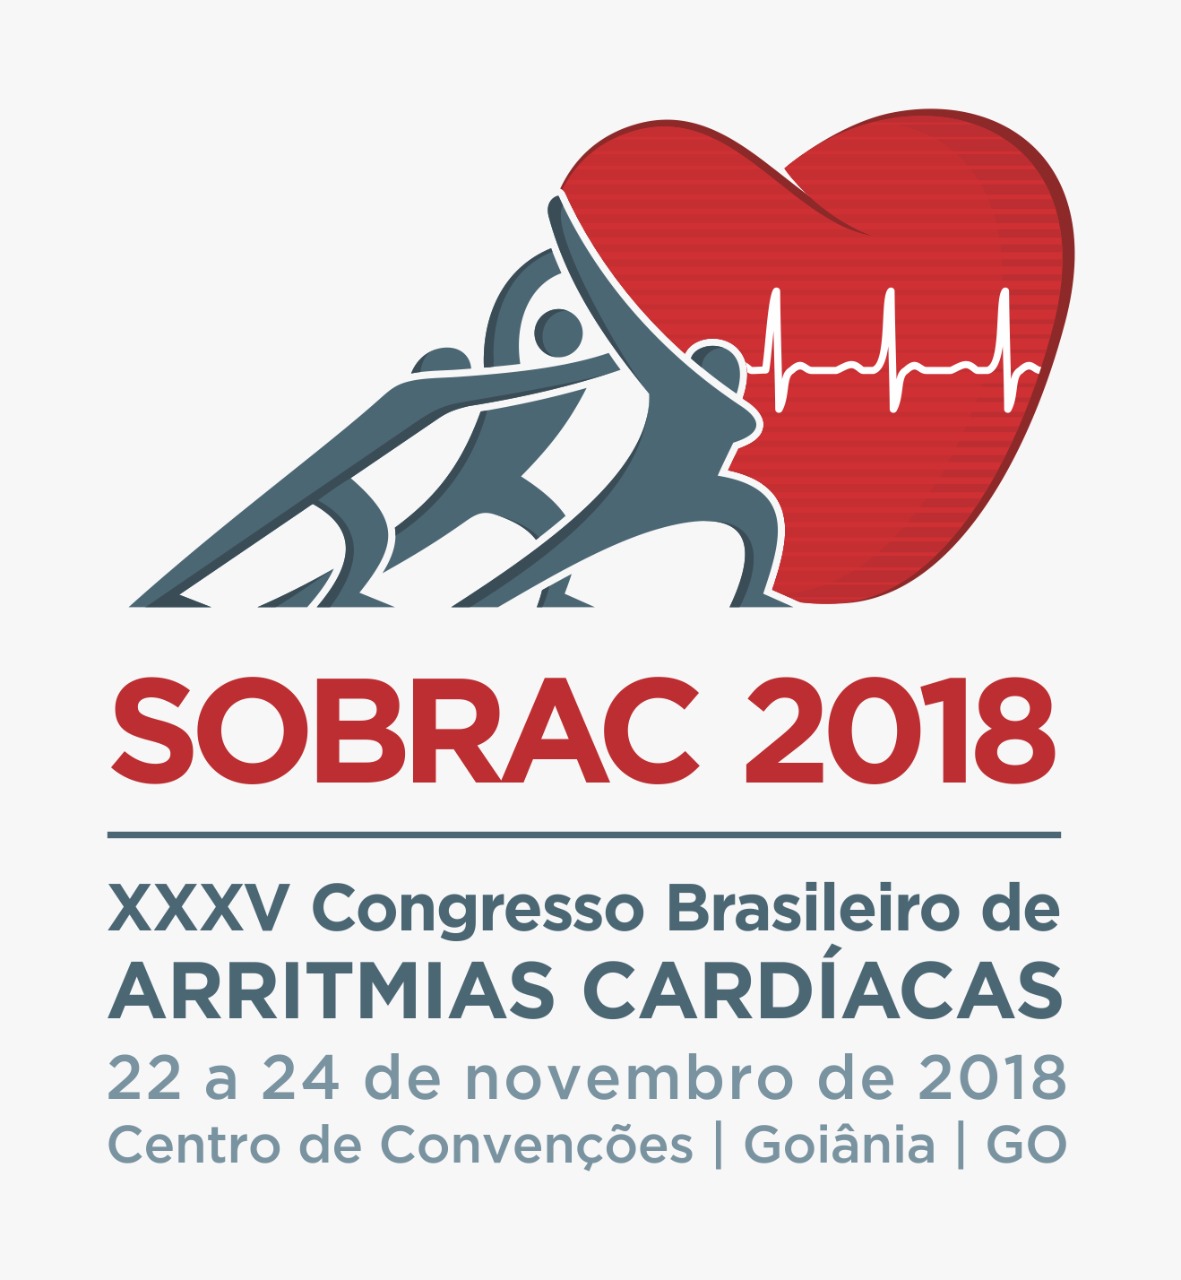 Sobrac 2018 - Congresso Brasileiro de Arritmias Cardíacas